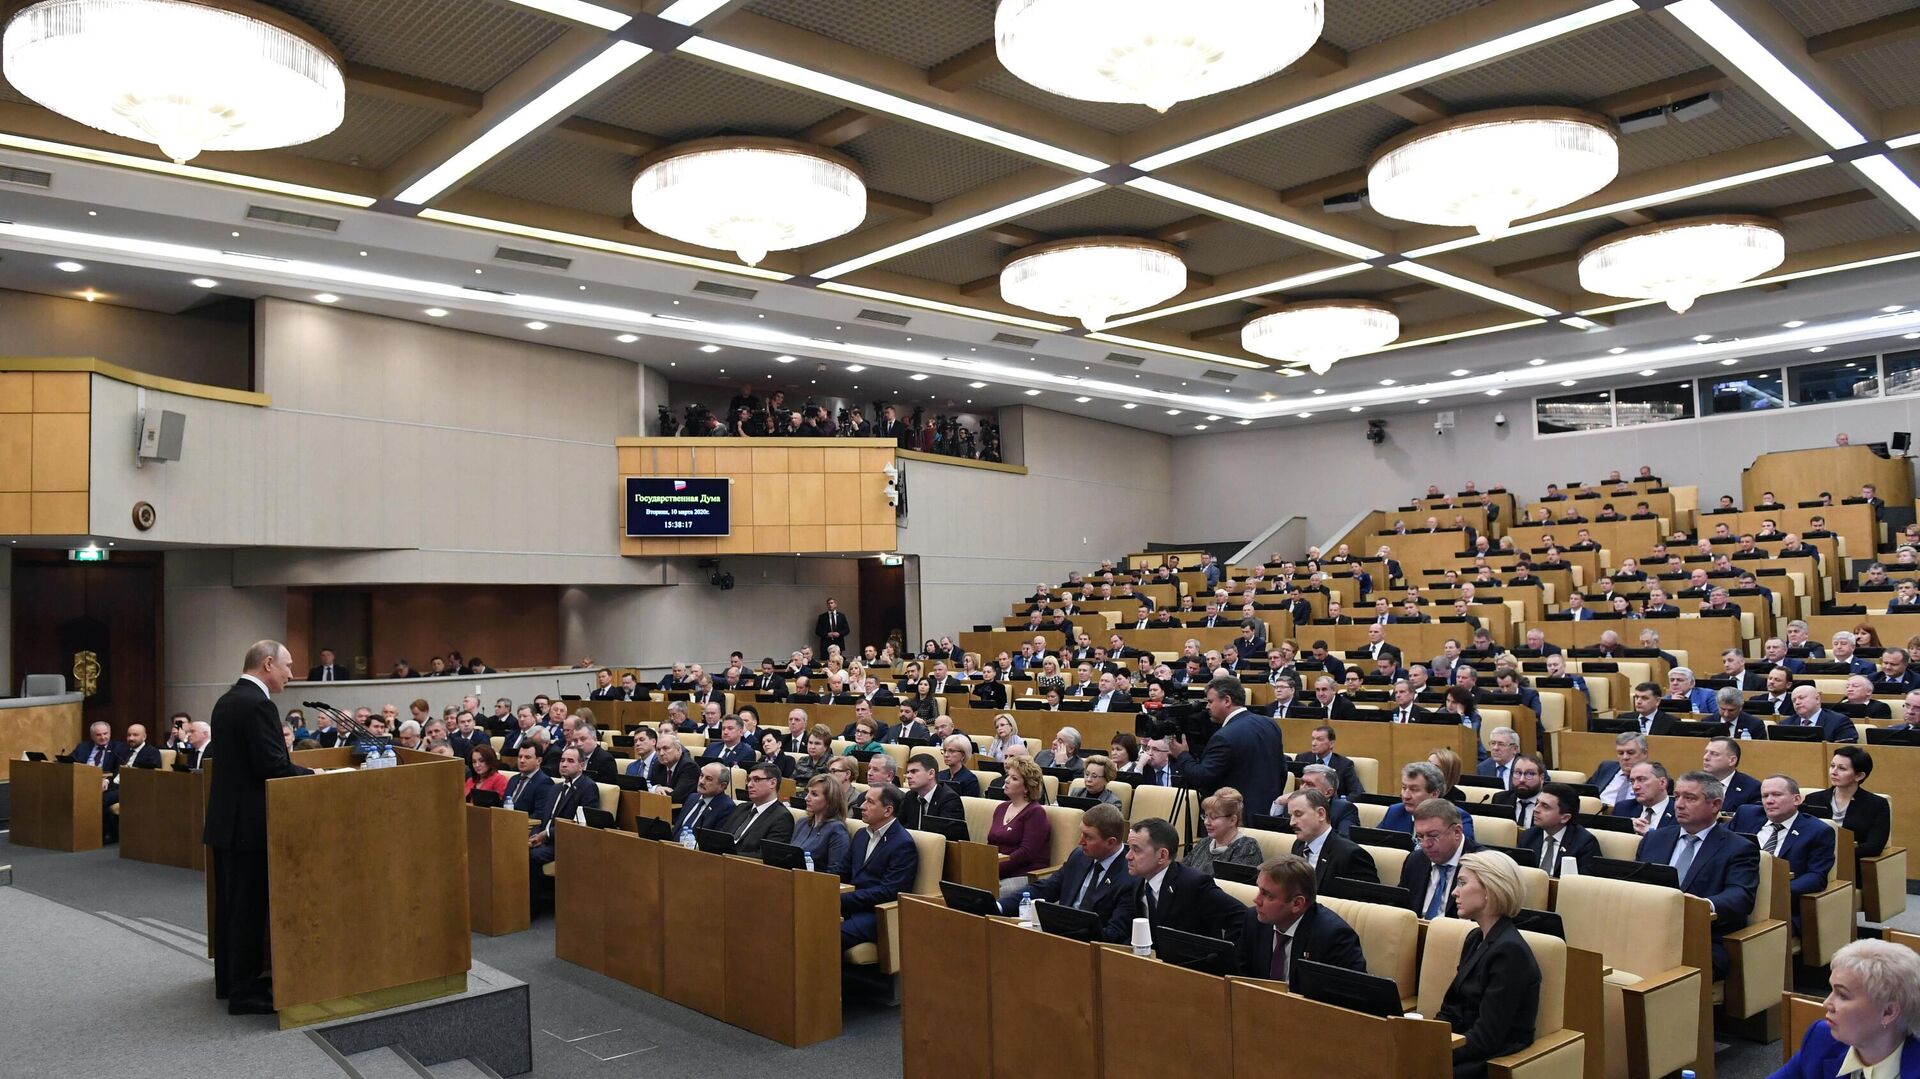 Путин встретится с депутатами Госдумы 21 июня